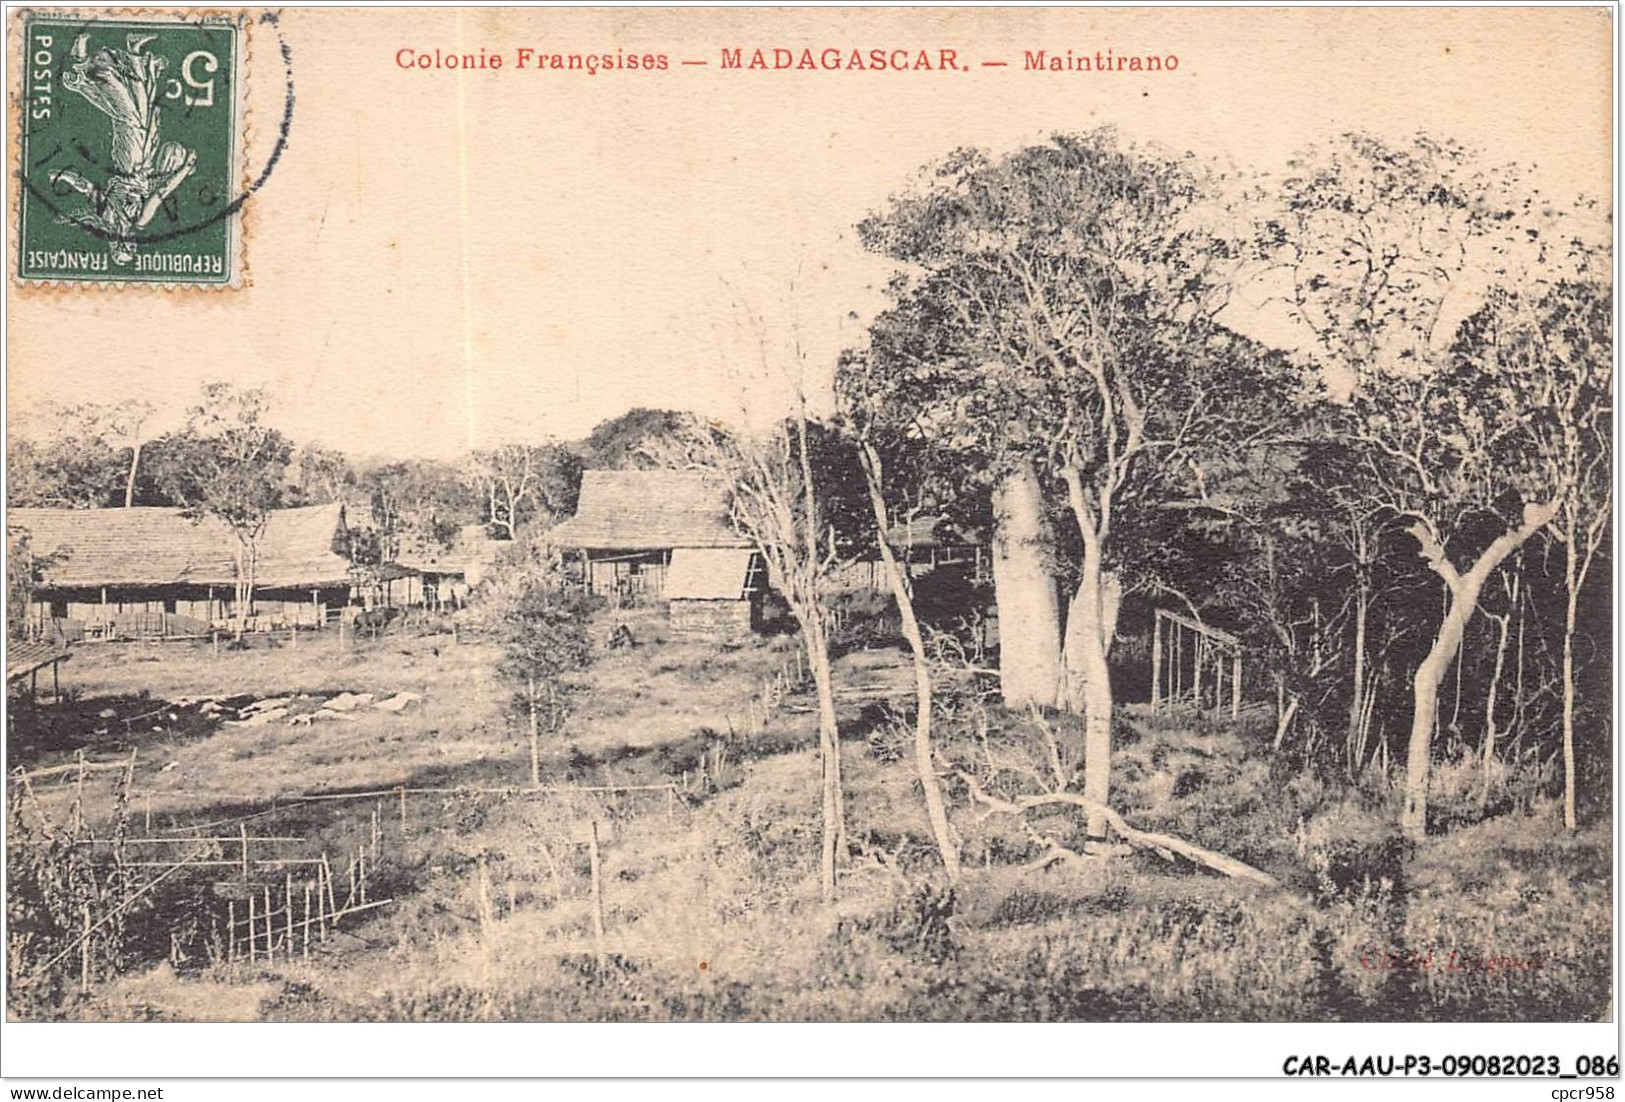 CAR-AAUP3-0190 - MADAGASCAR - Colonies Francaises - Maintirano - Madagascar